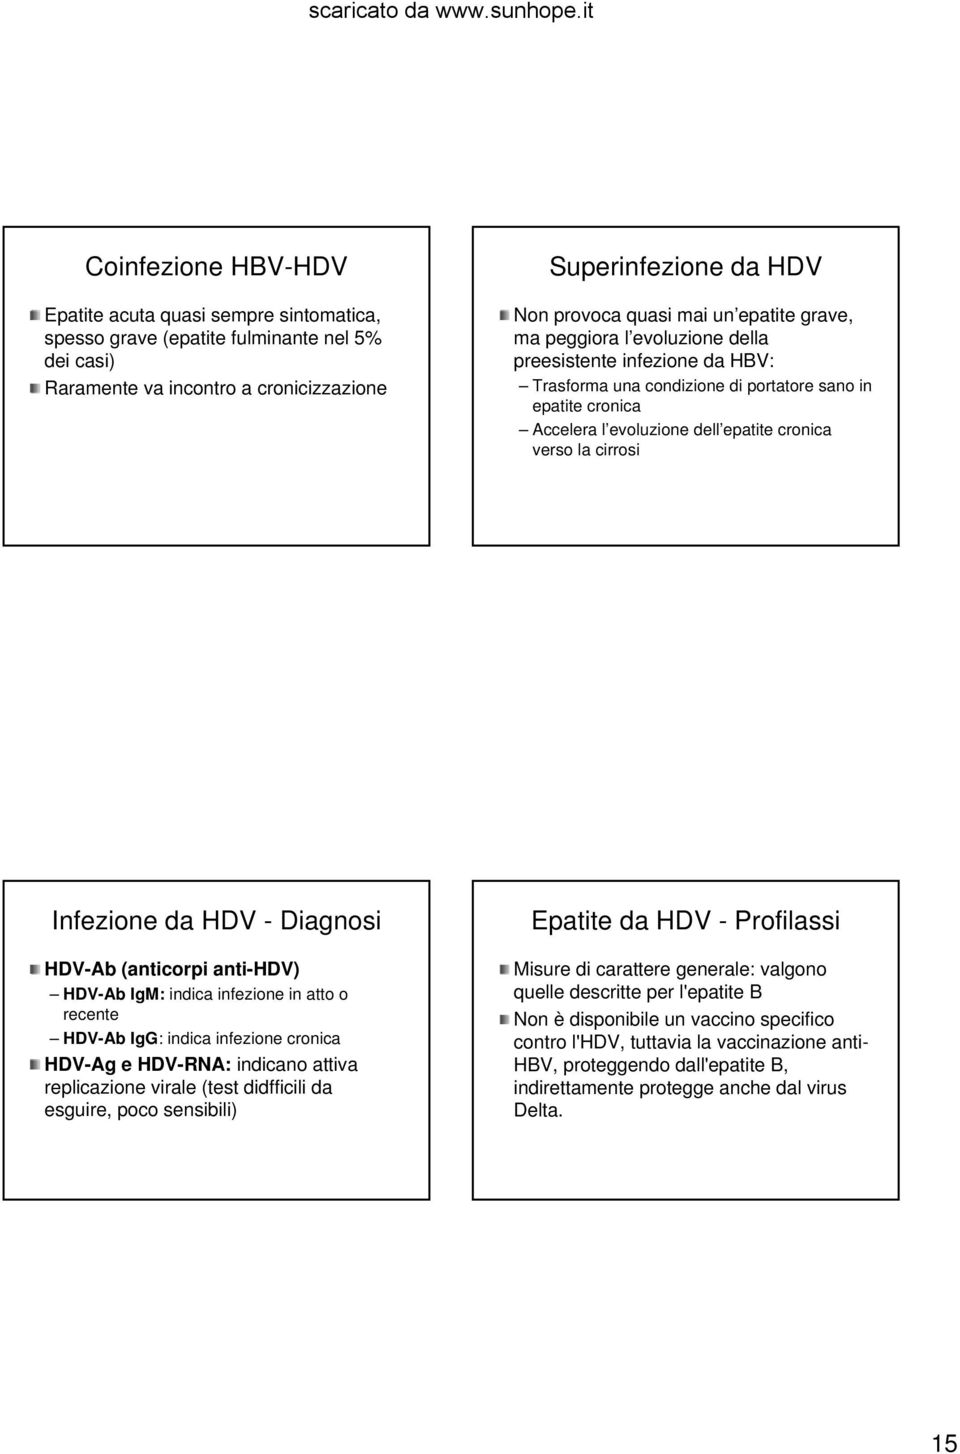 Infezione da HDV Diagnosi HDVAb (anticorpi antihdv) HDVAb IgM: indica infezione in atto o recente HDVAb IgG: indica infezione cronica HDVAg e HDVRNA: indicano attiva replicazione virale (test